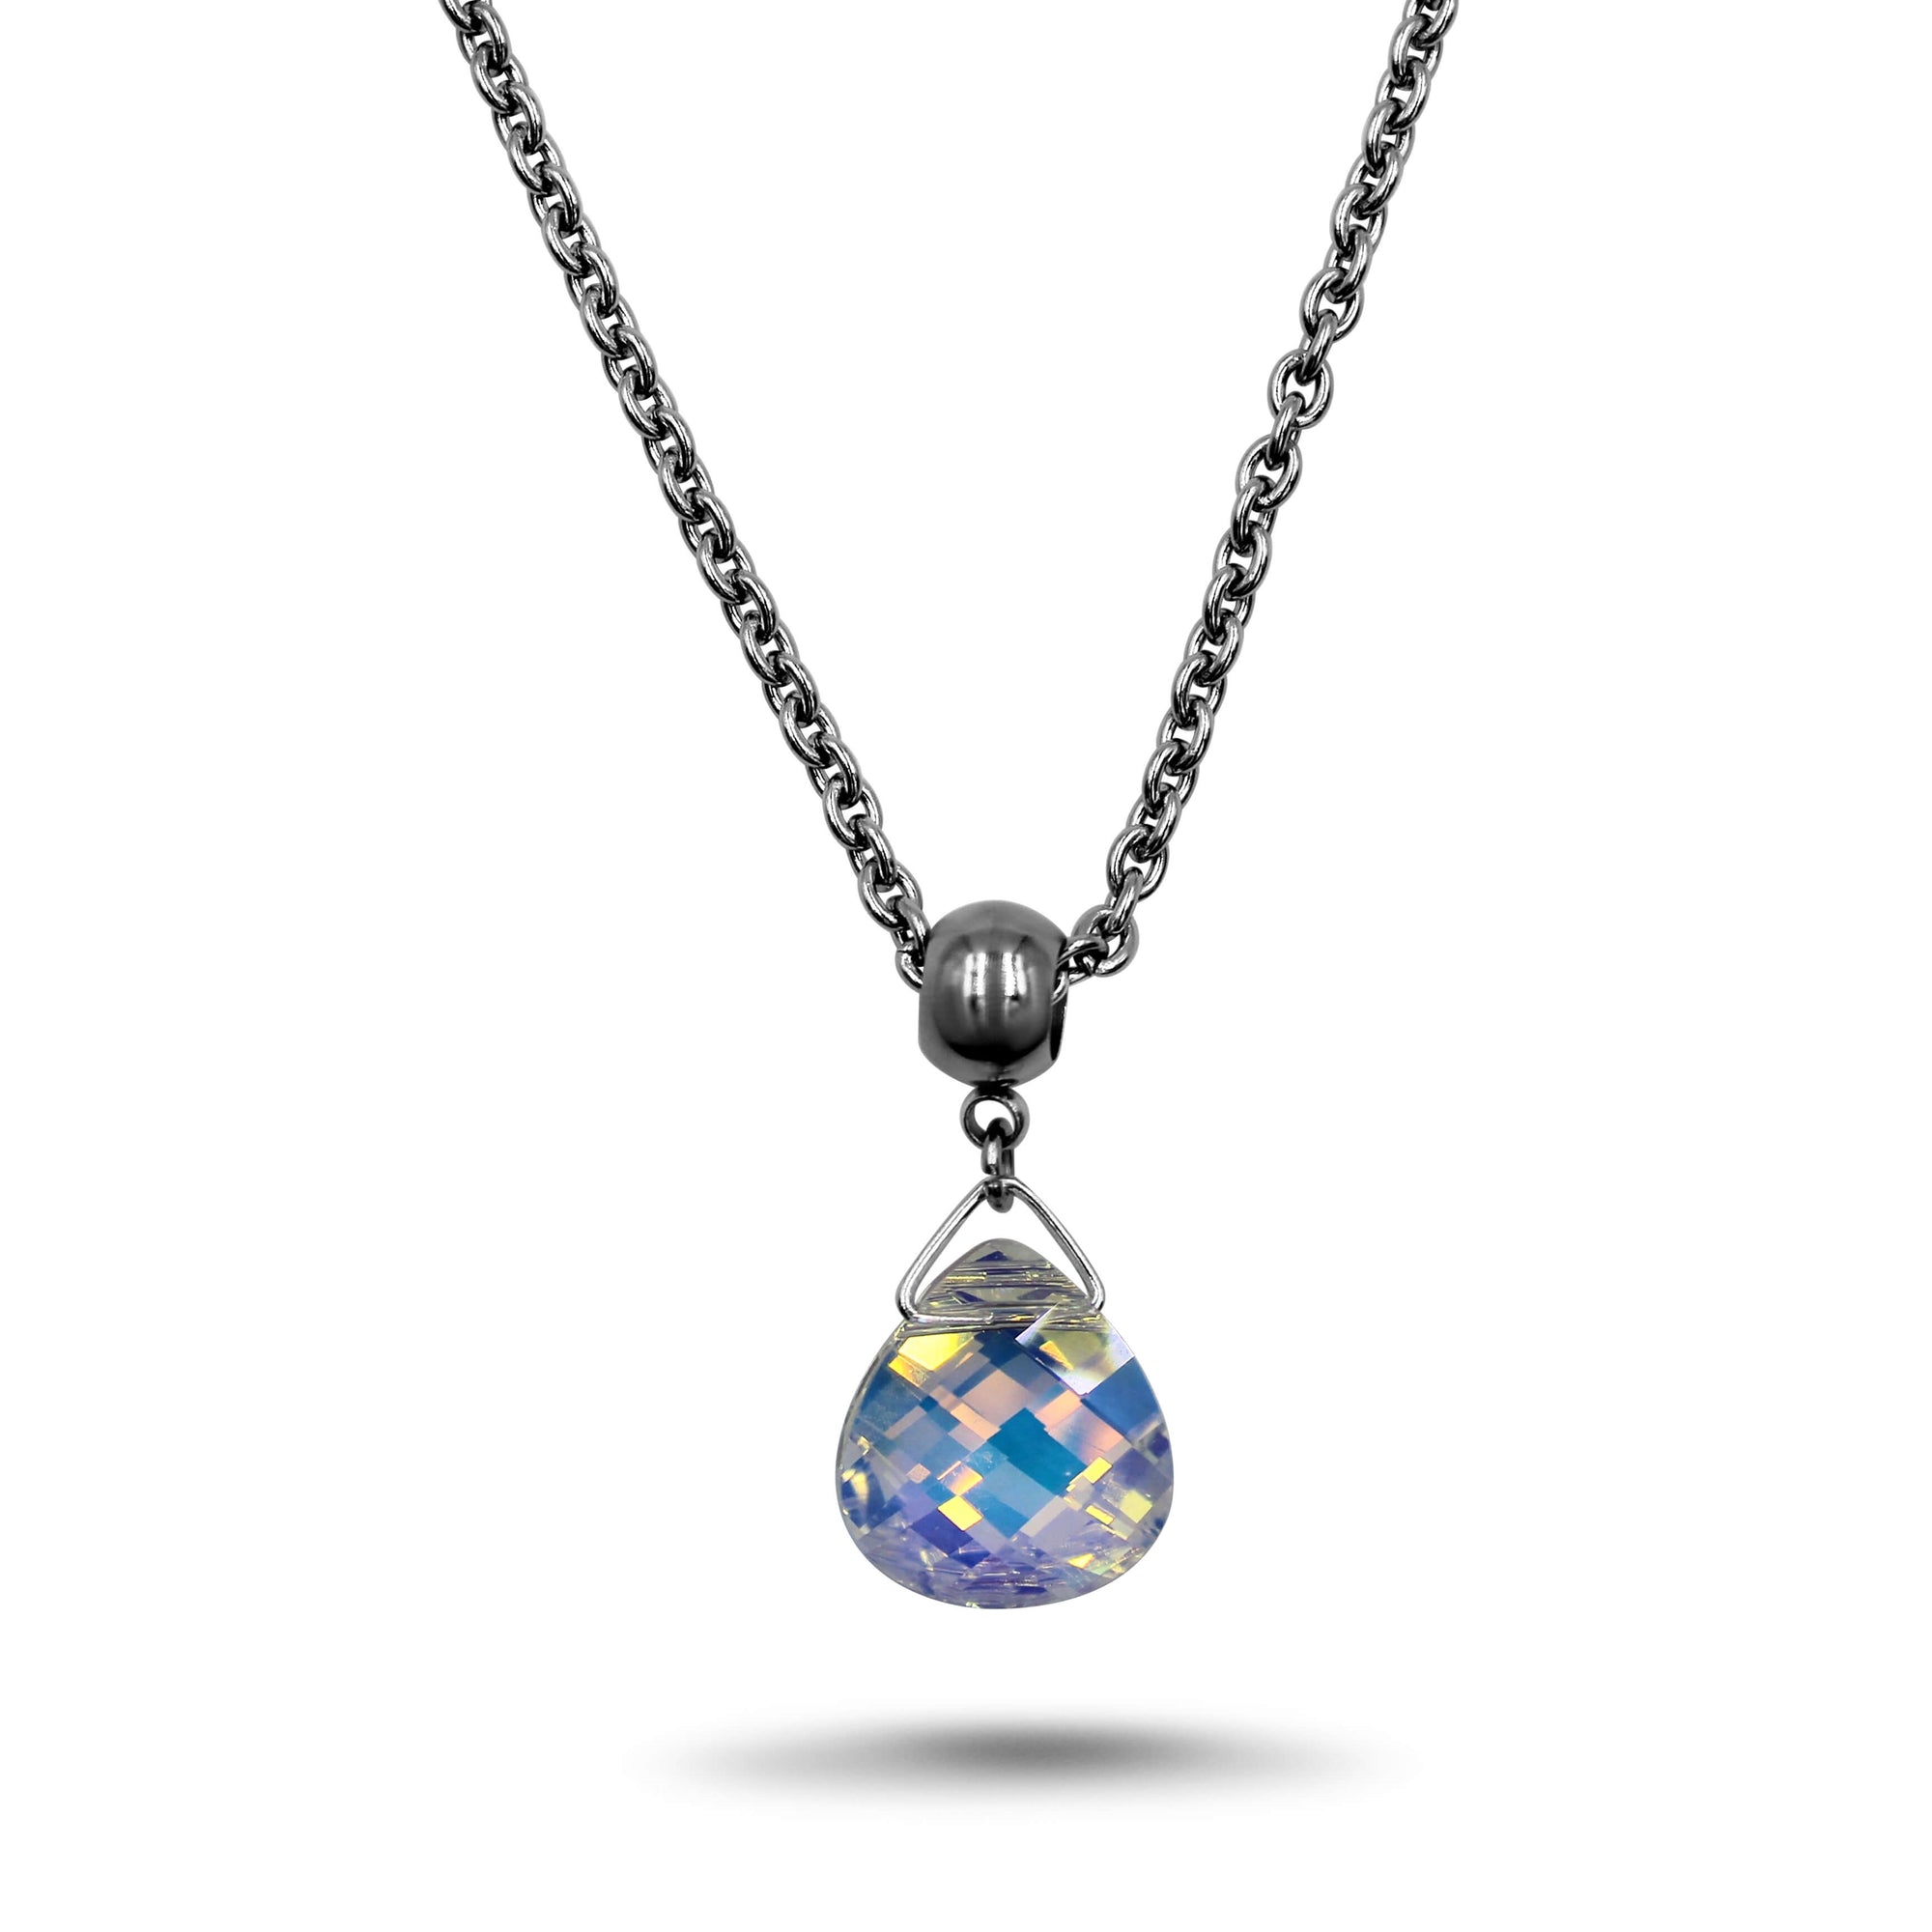 AB Swarovski Crystal Necklace - Creative Jewelry by Marcia - Asymmetrical Jewelry - Timeless Jewelry